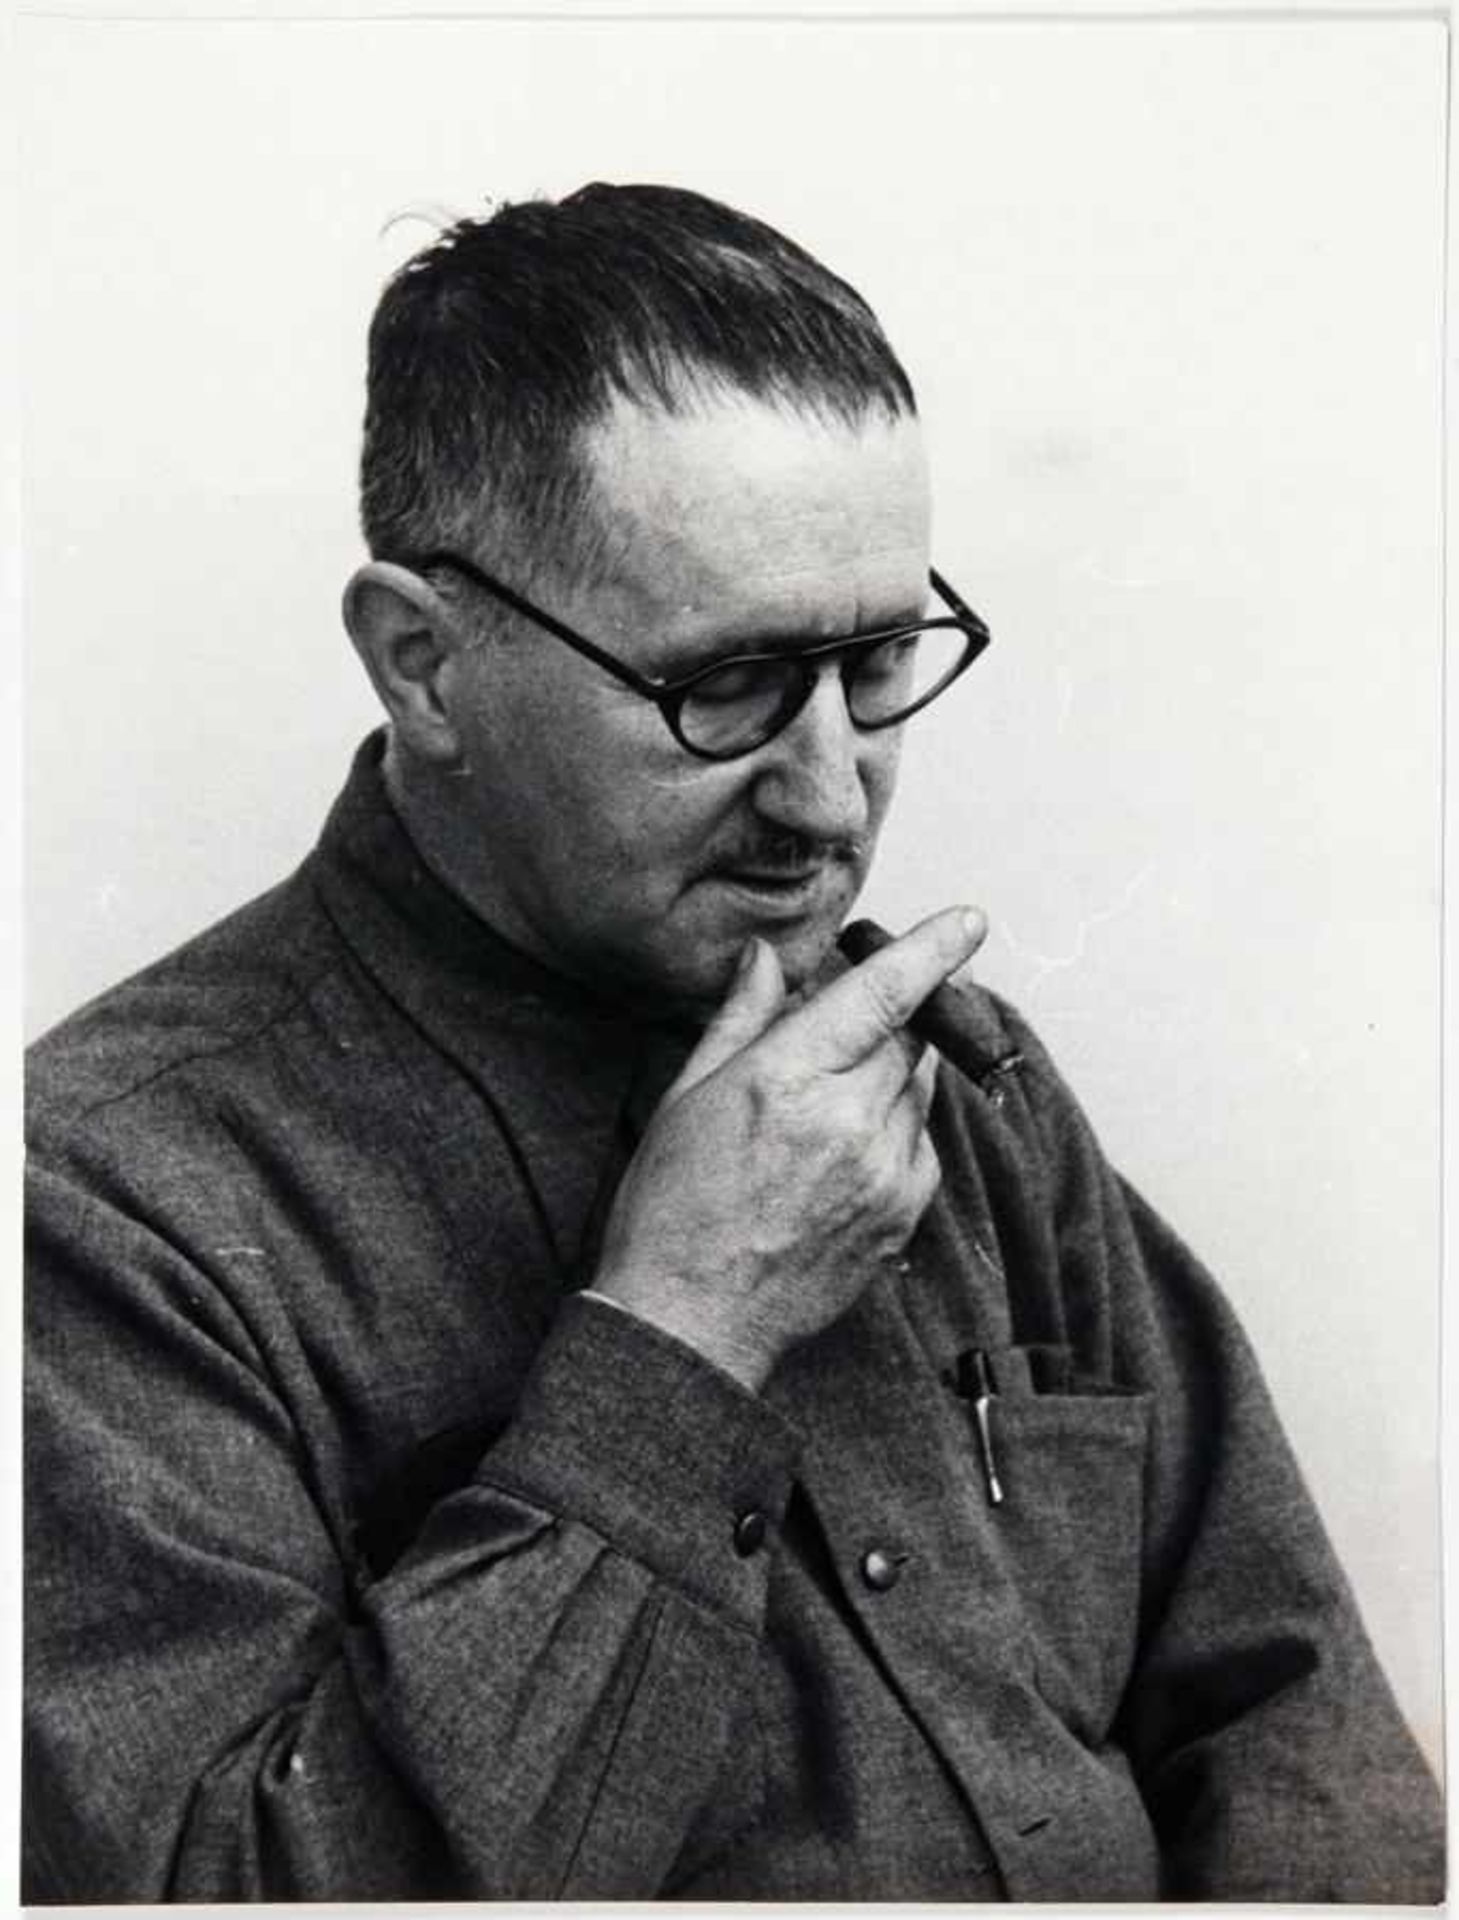 Jacqueline Vodoz. Bertolt Brecht mit Zigarre. Fotografie. Silbergelantine. Um 1955. 23 : 17 cm. Eins - Image 2 of 2